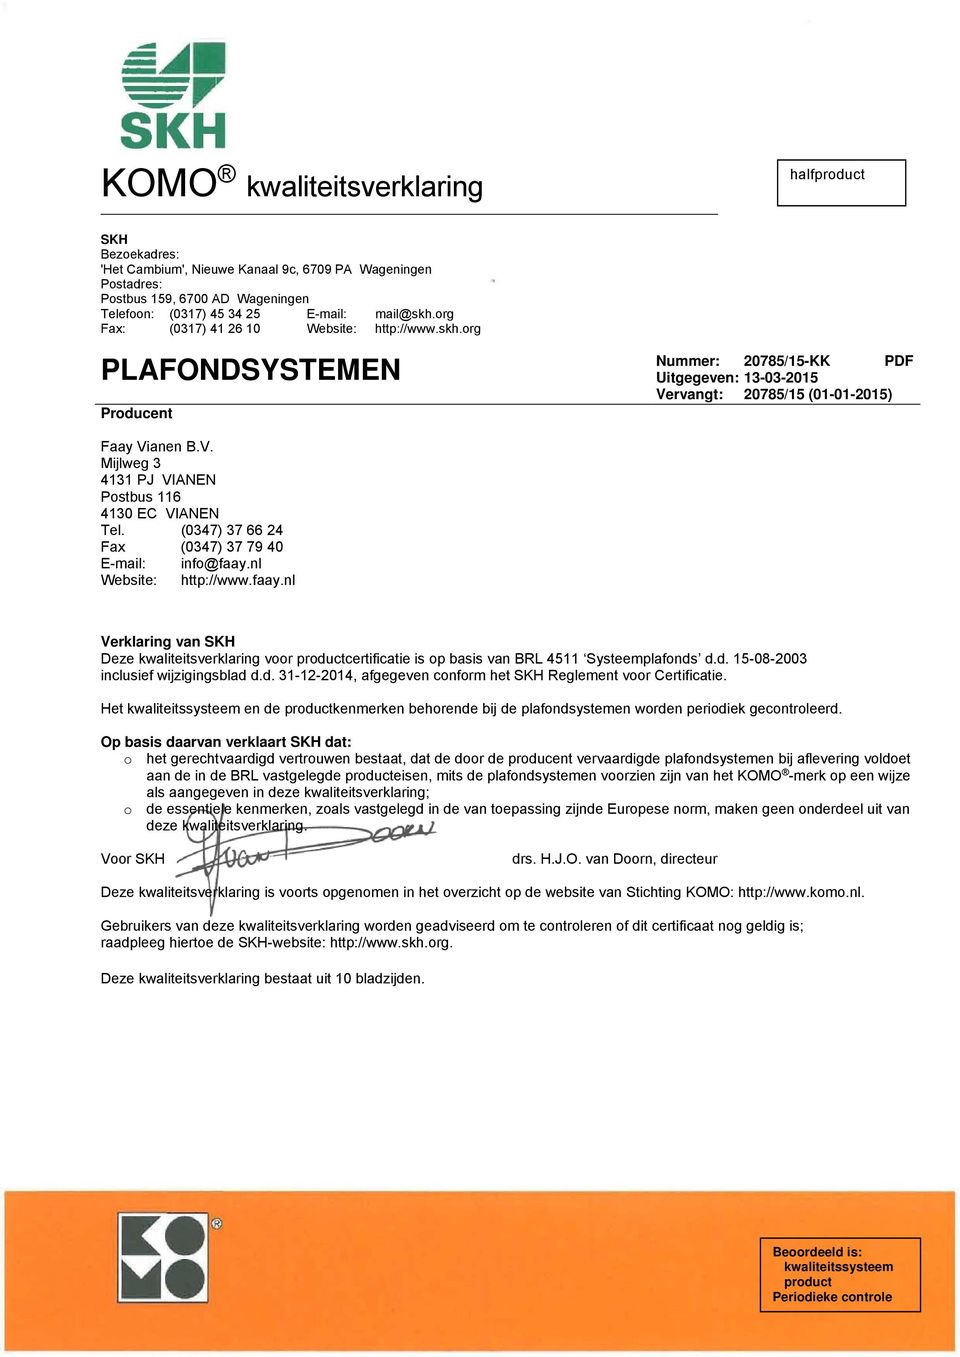 (0347) 37 66 24 Fax (0347) 37 79 40 E-mail: info@faay.nl Website: http://www.faay.nl Verklaring van SKH Deze kwaliteitsverklaring voor productcertificatie is op basis van BRL 4511 Systeemplafonds d.d. 15-08-2003 inclusief wijzigingsblad d.